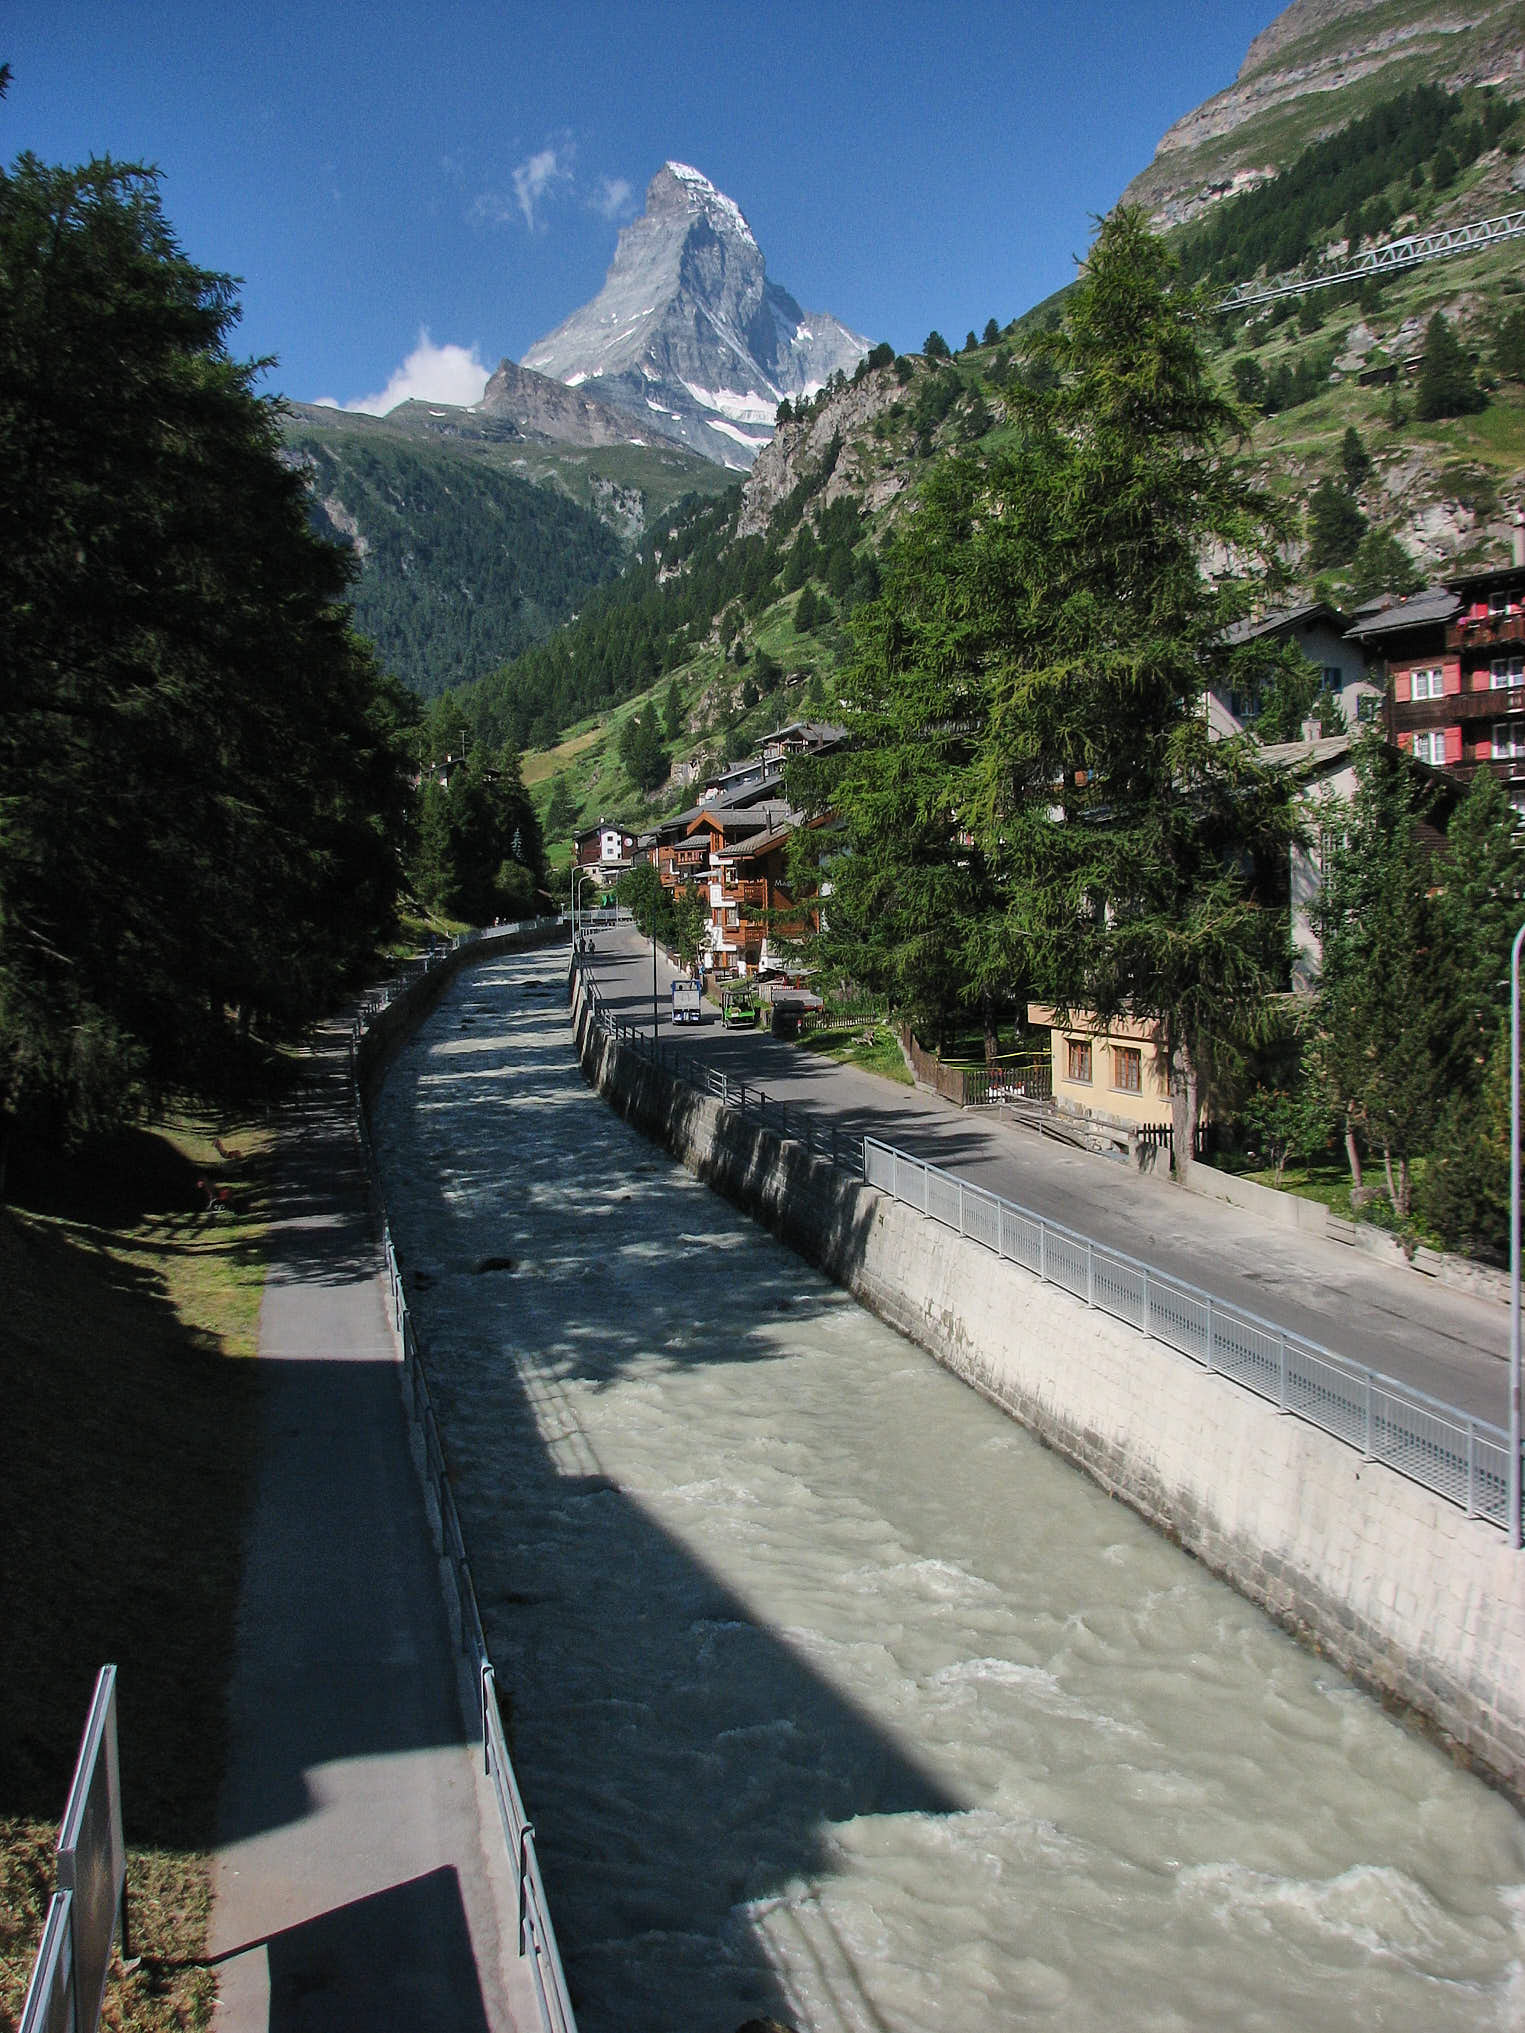 Klassisk vy i Zermatt med Matterhorn som tornar upp sig